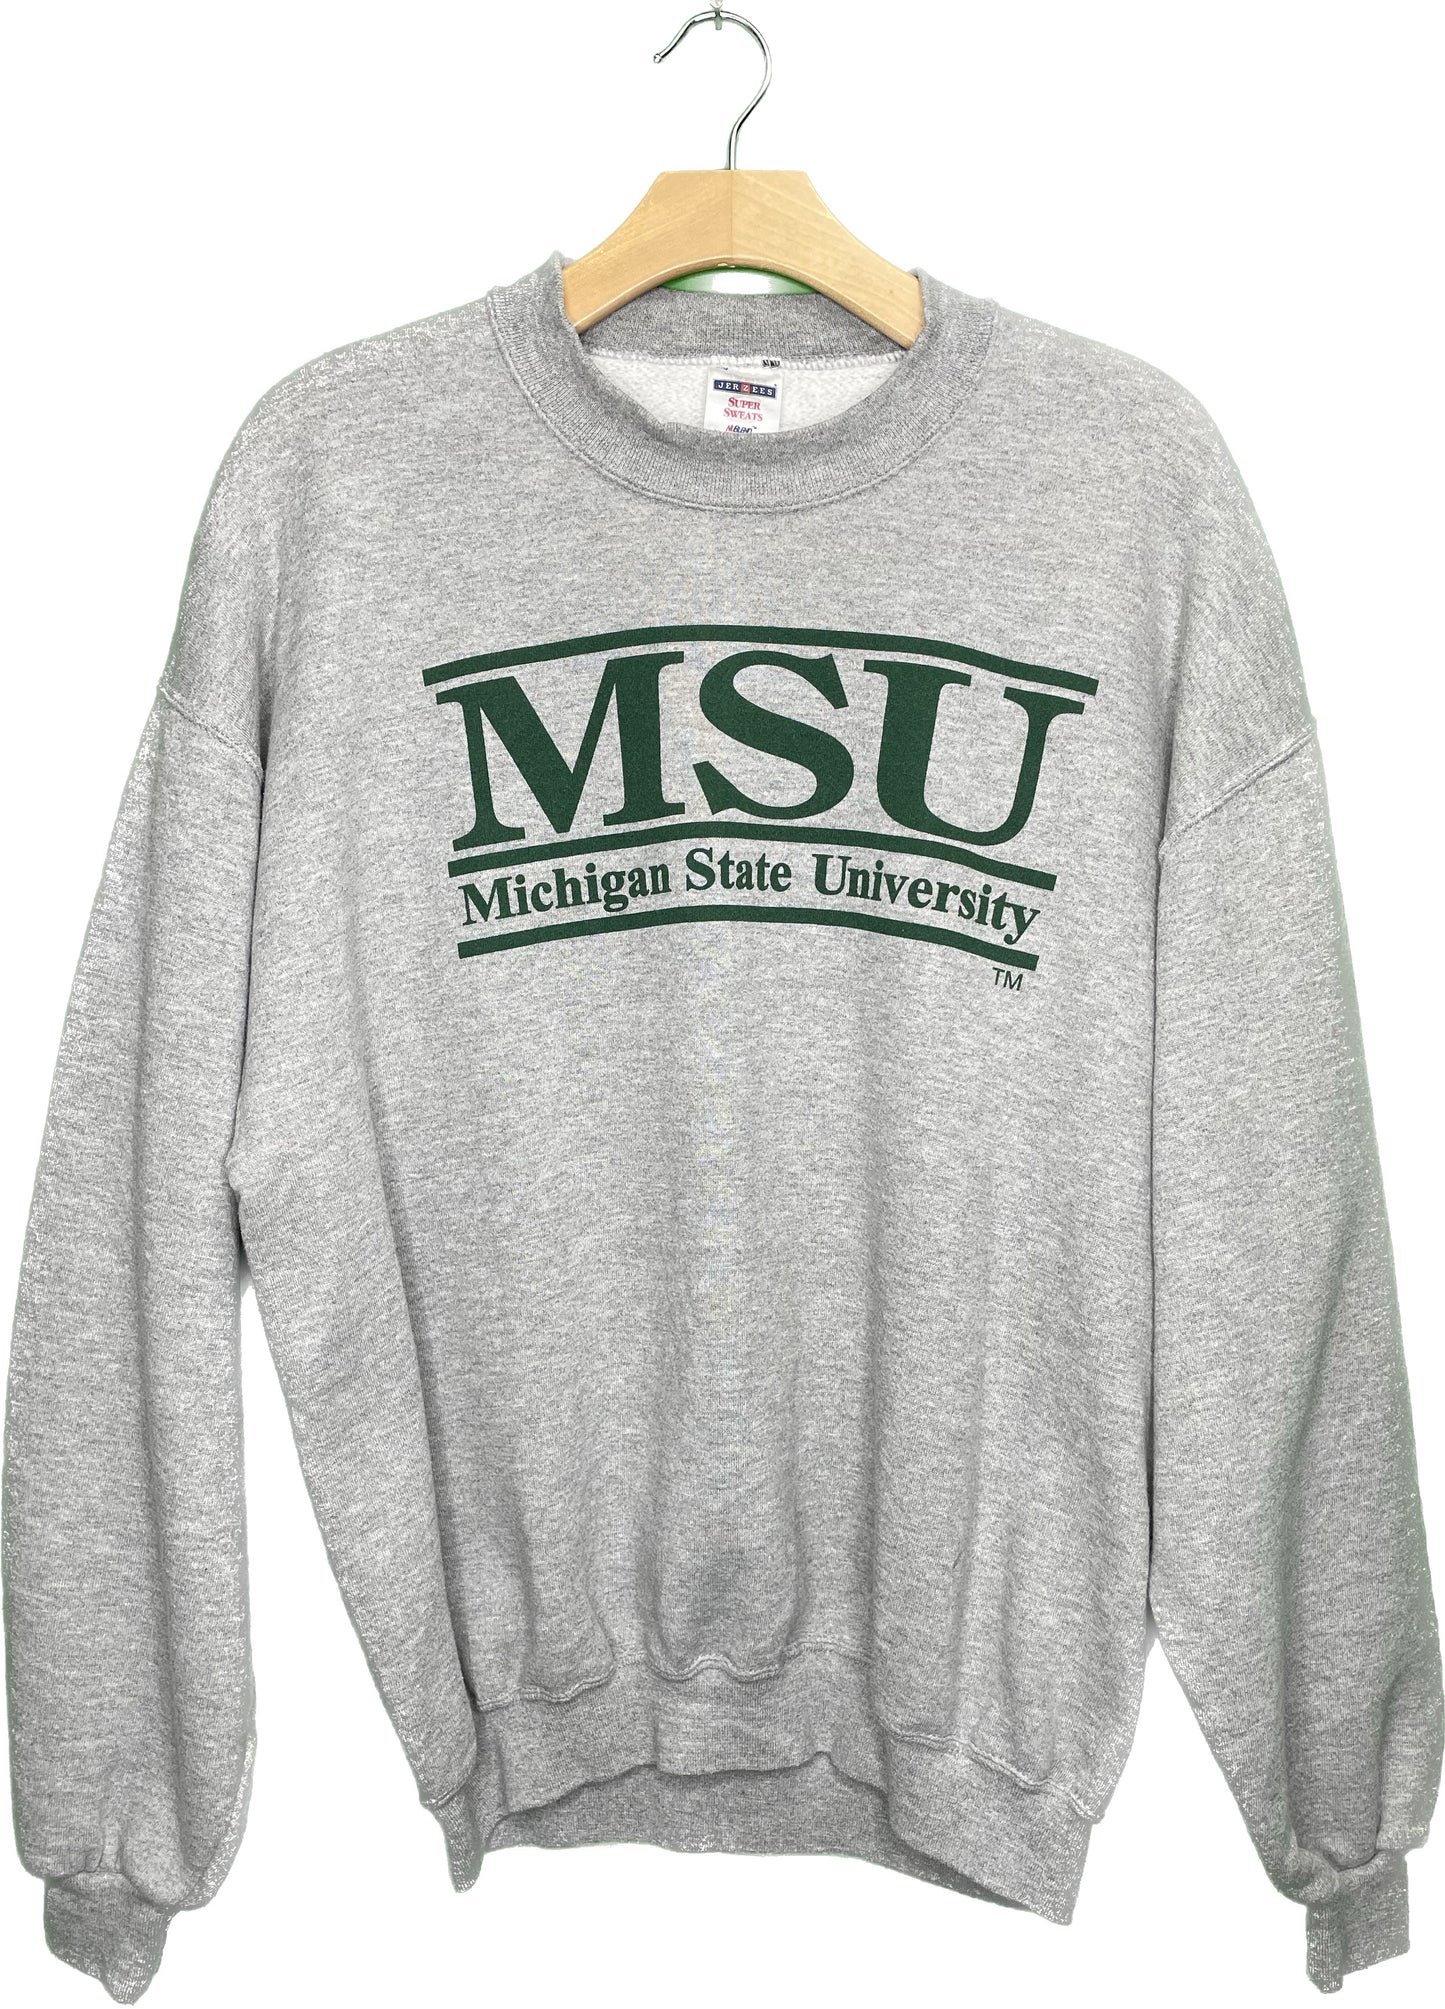 Vintage XL MSU Michigan State University College Sweatshirt